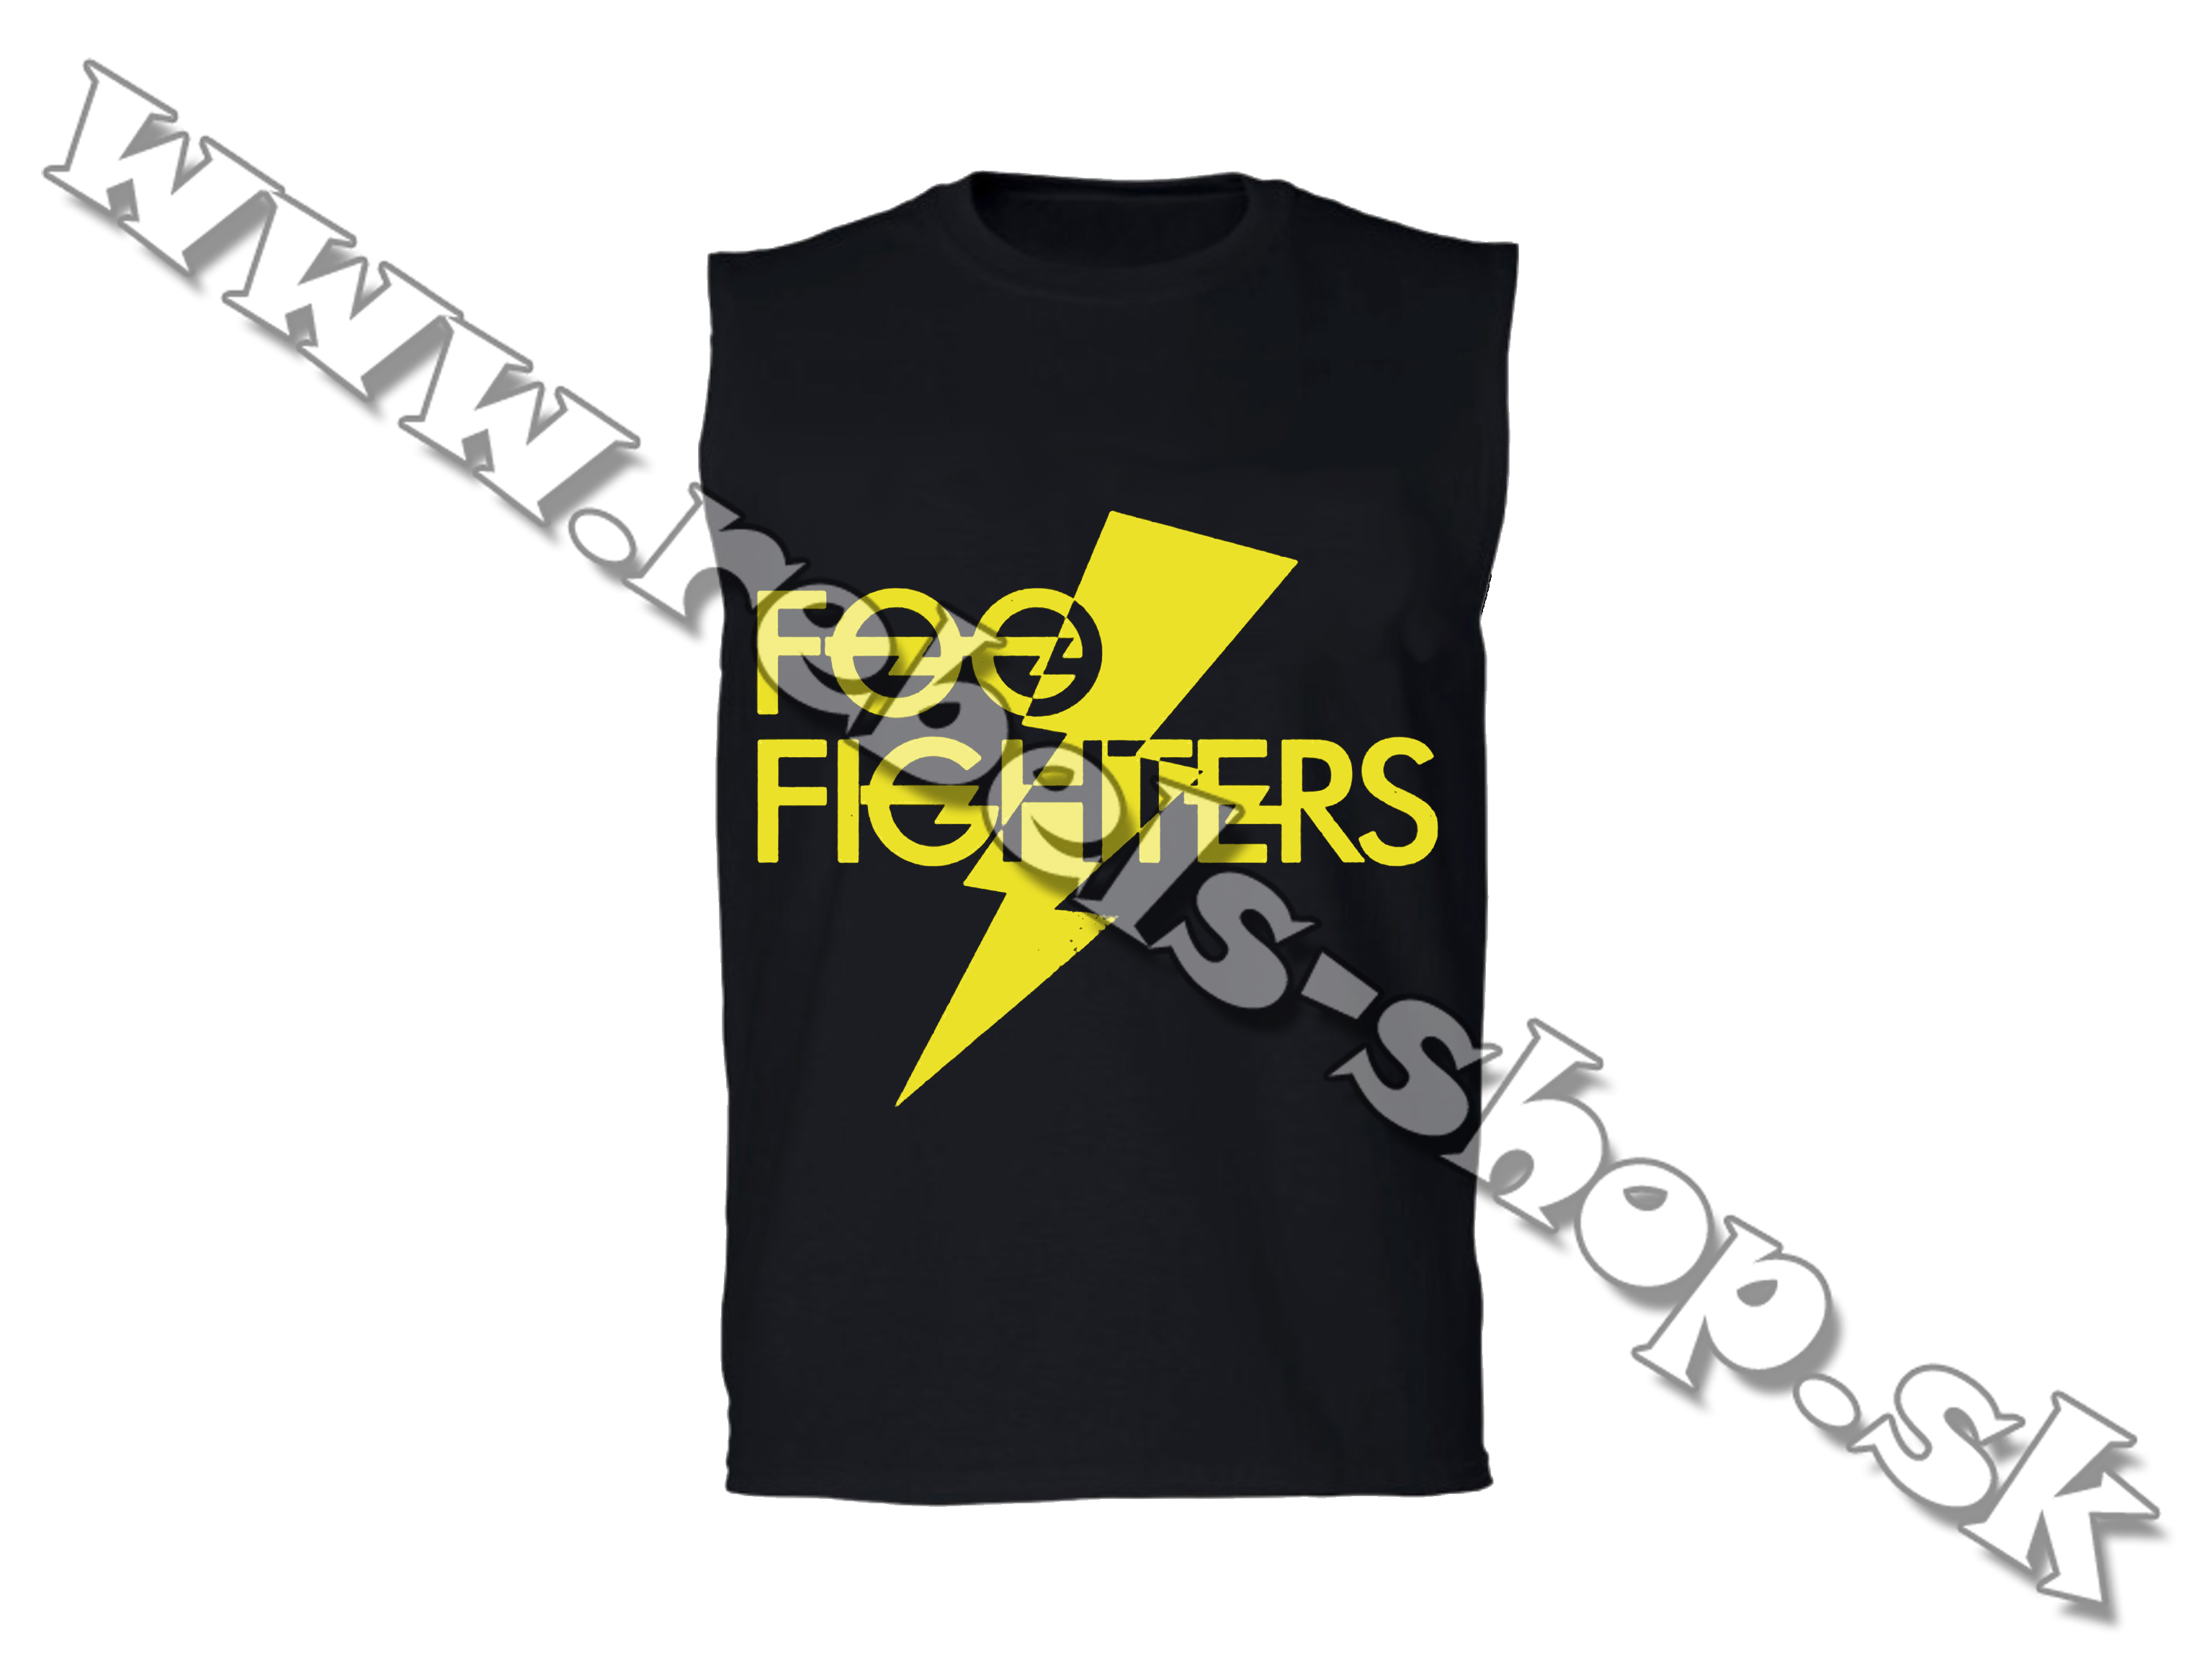 Tričko "Foo Fighters"